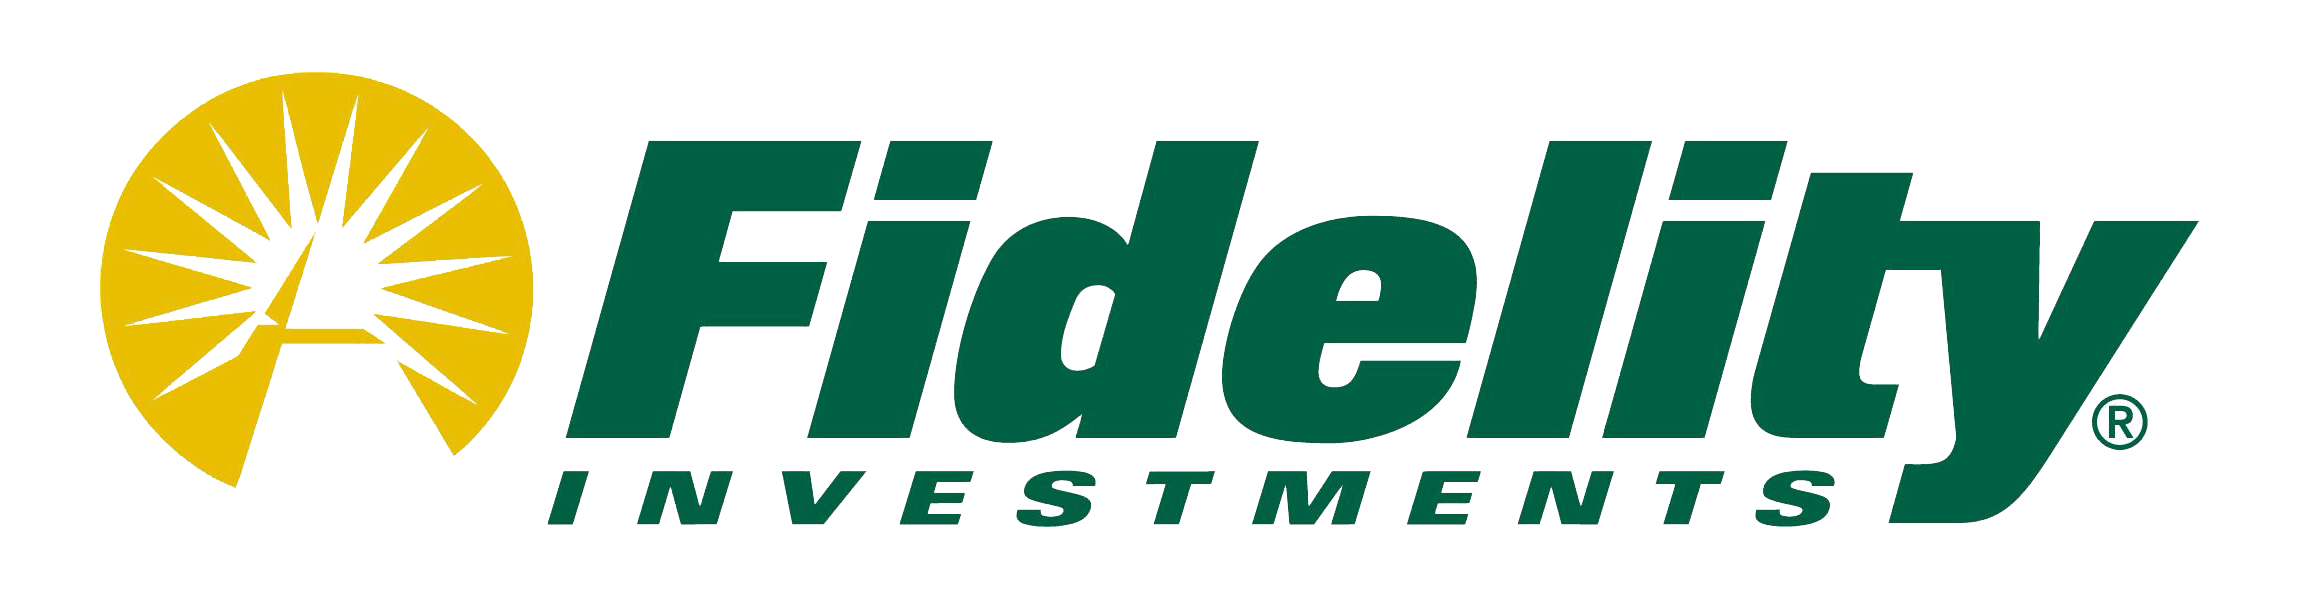 Fidelity-Vendor-Logo.png